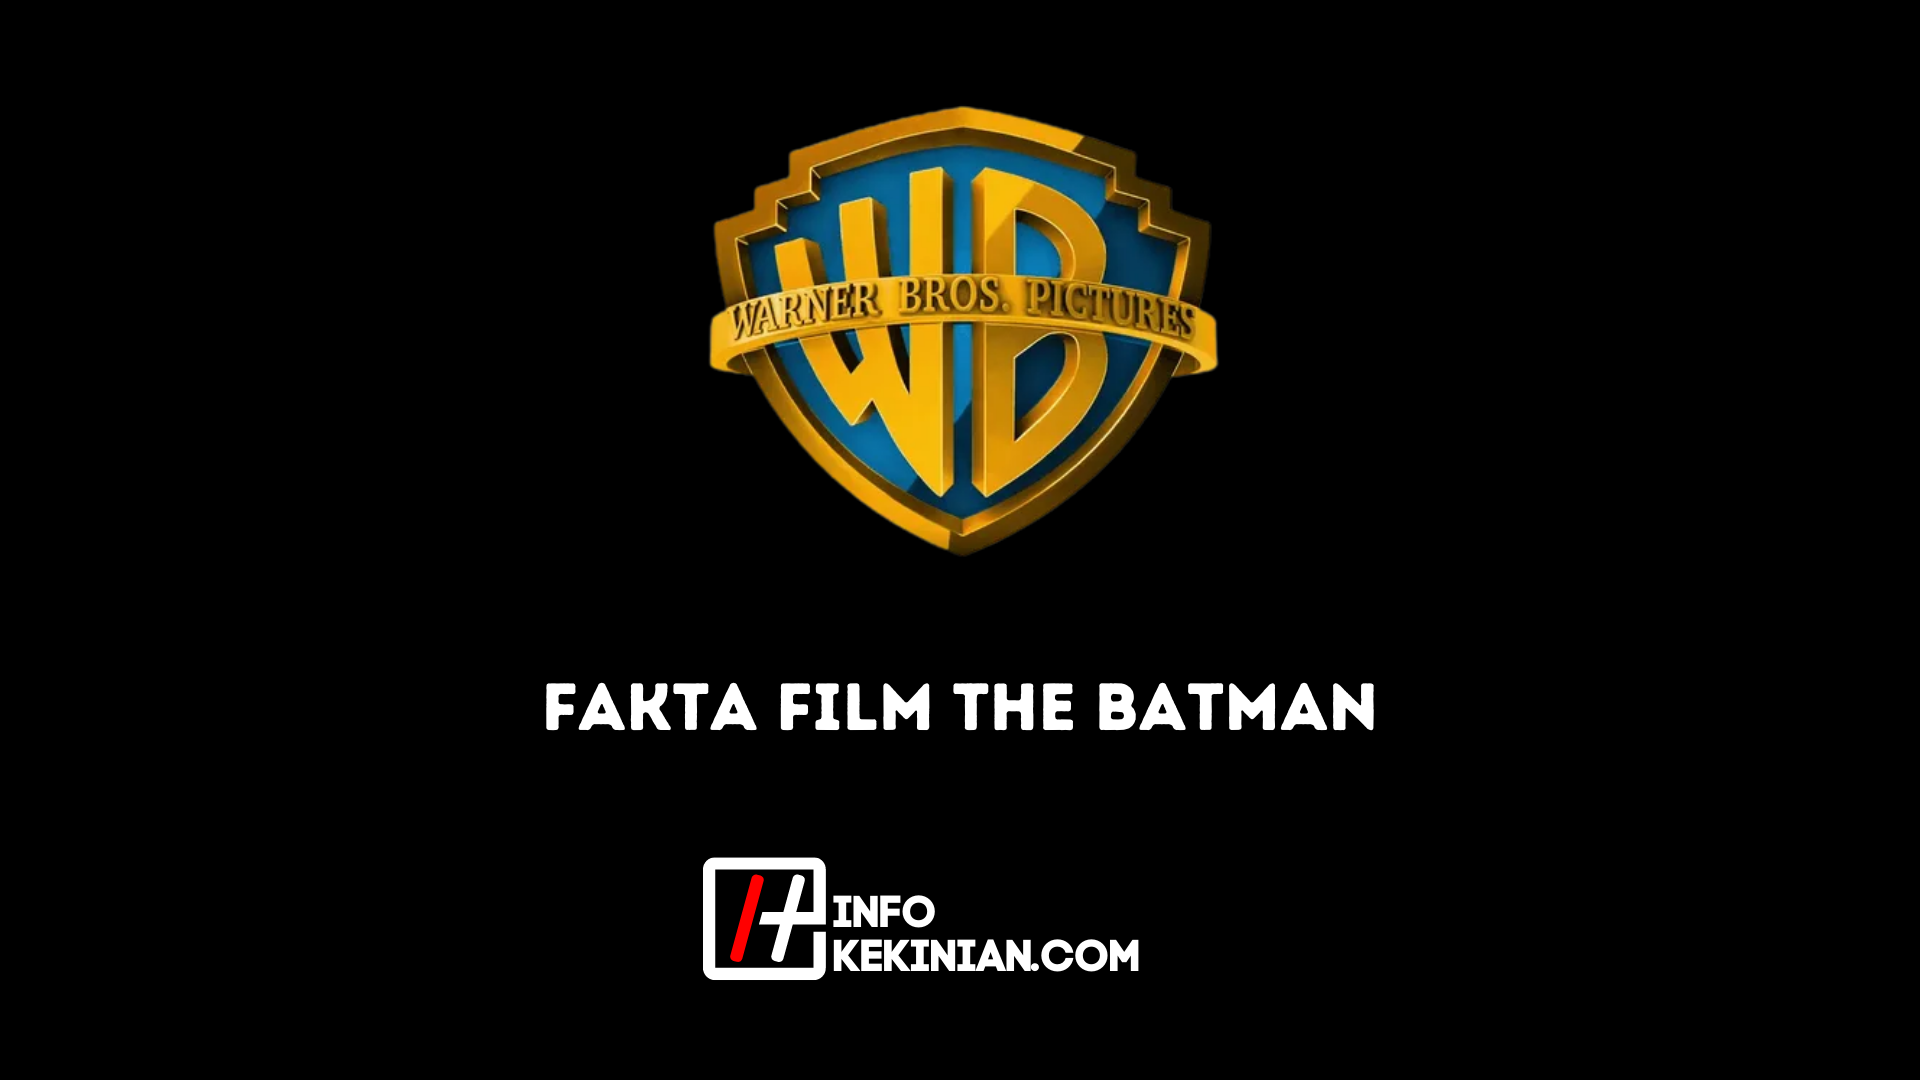 Les faits sur le film Batman